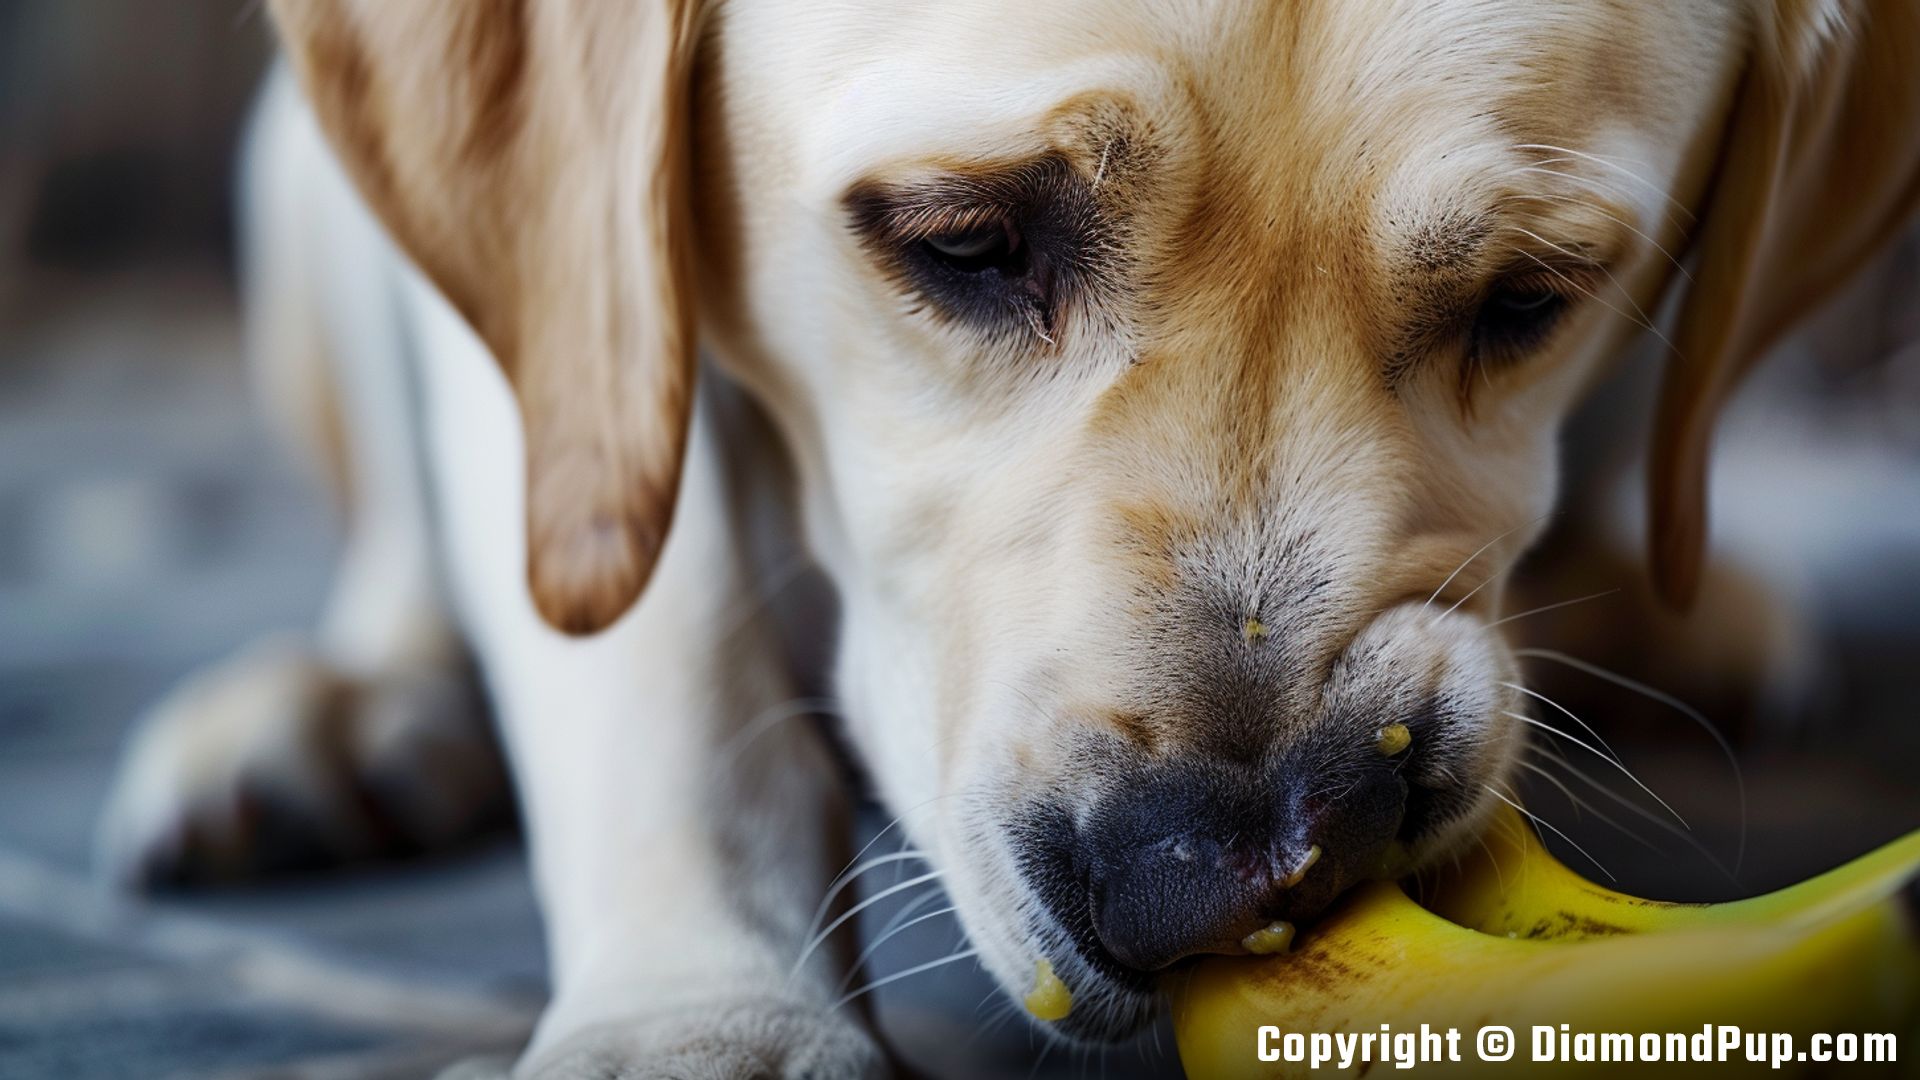 Photo of an Adorable Labrador Eating Banana